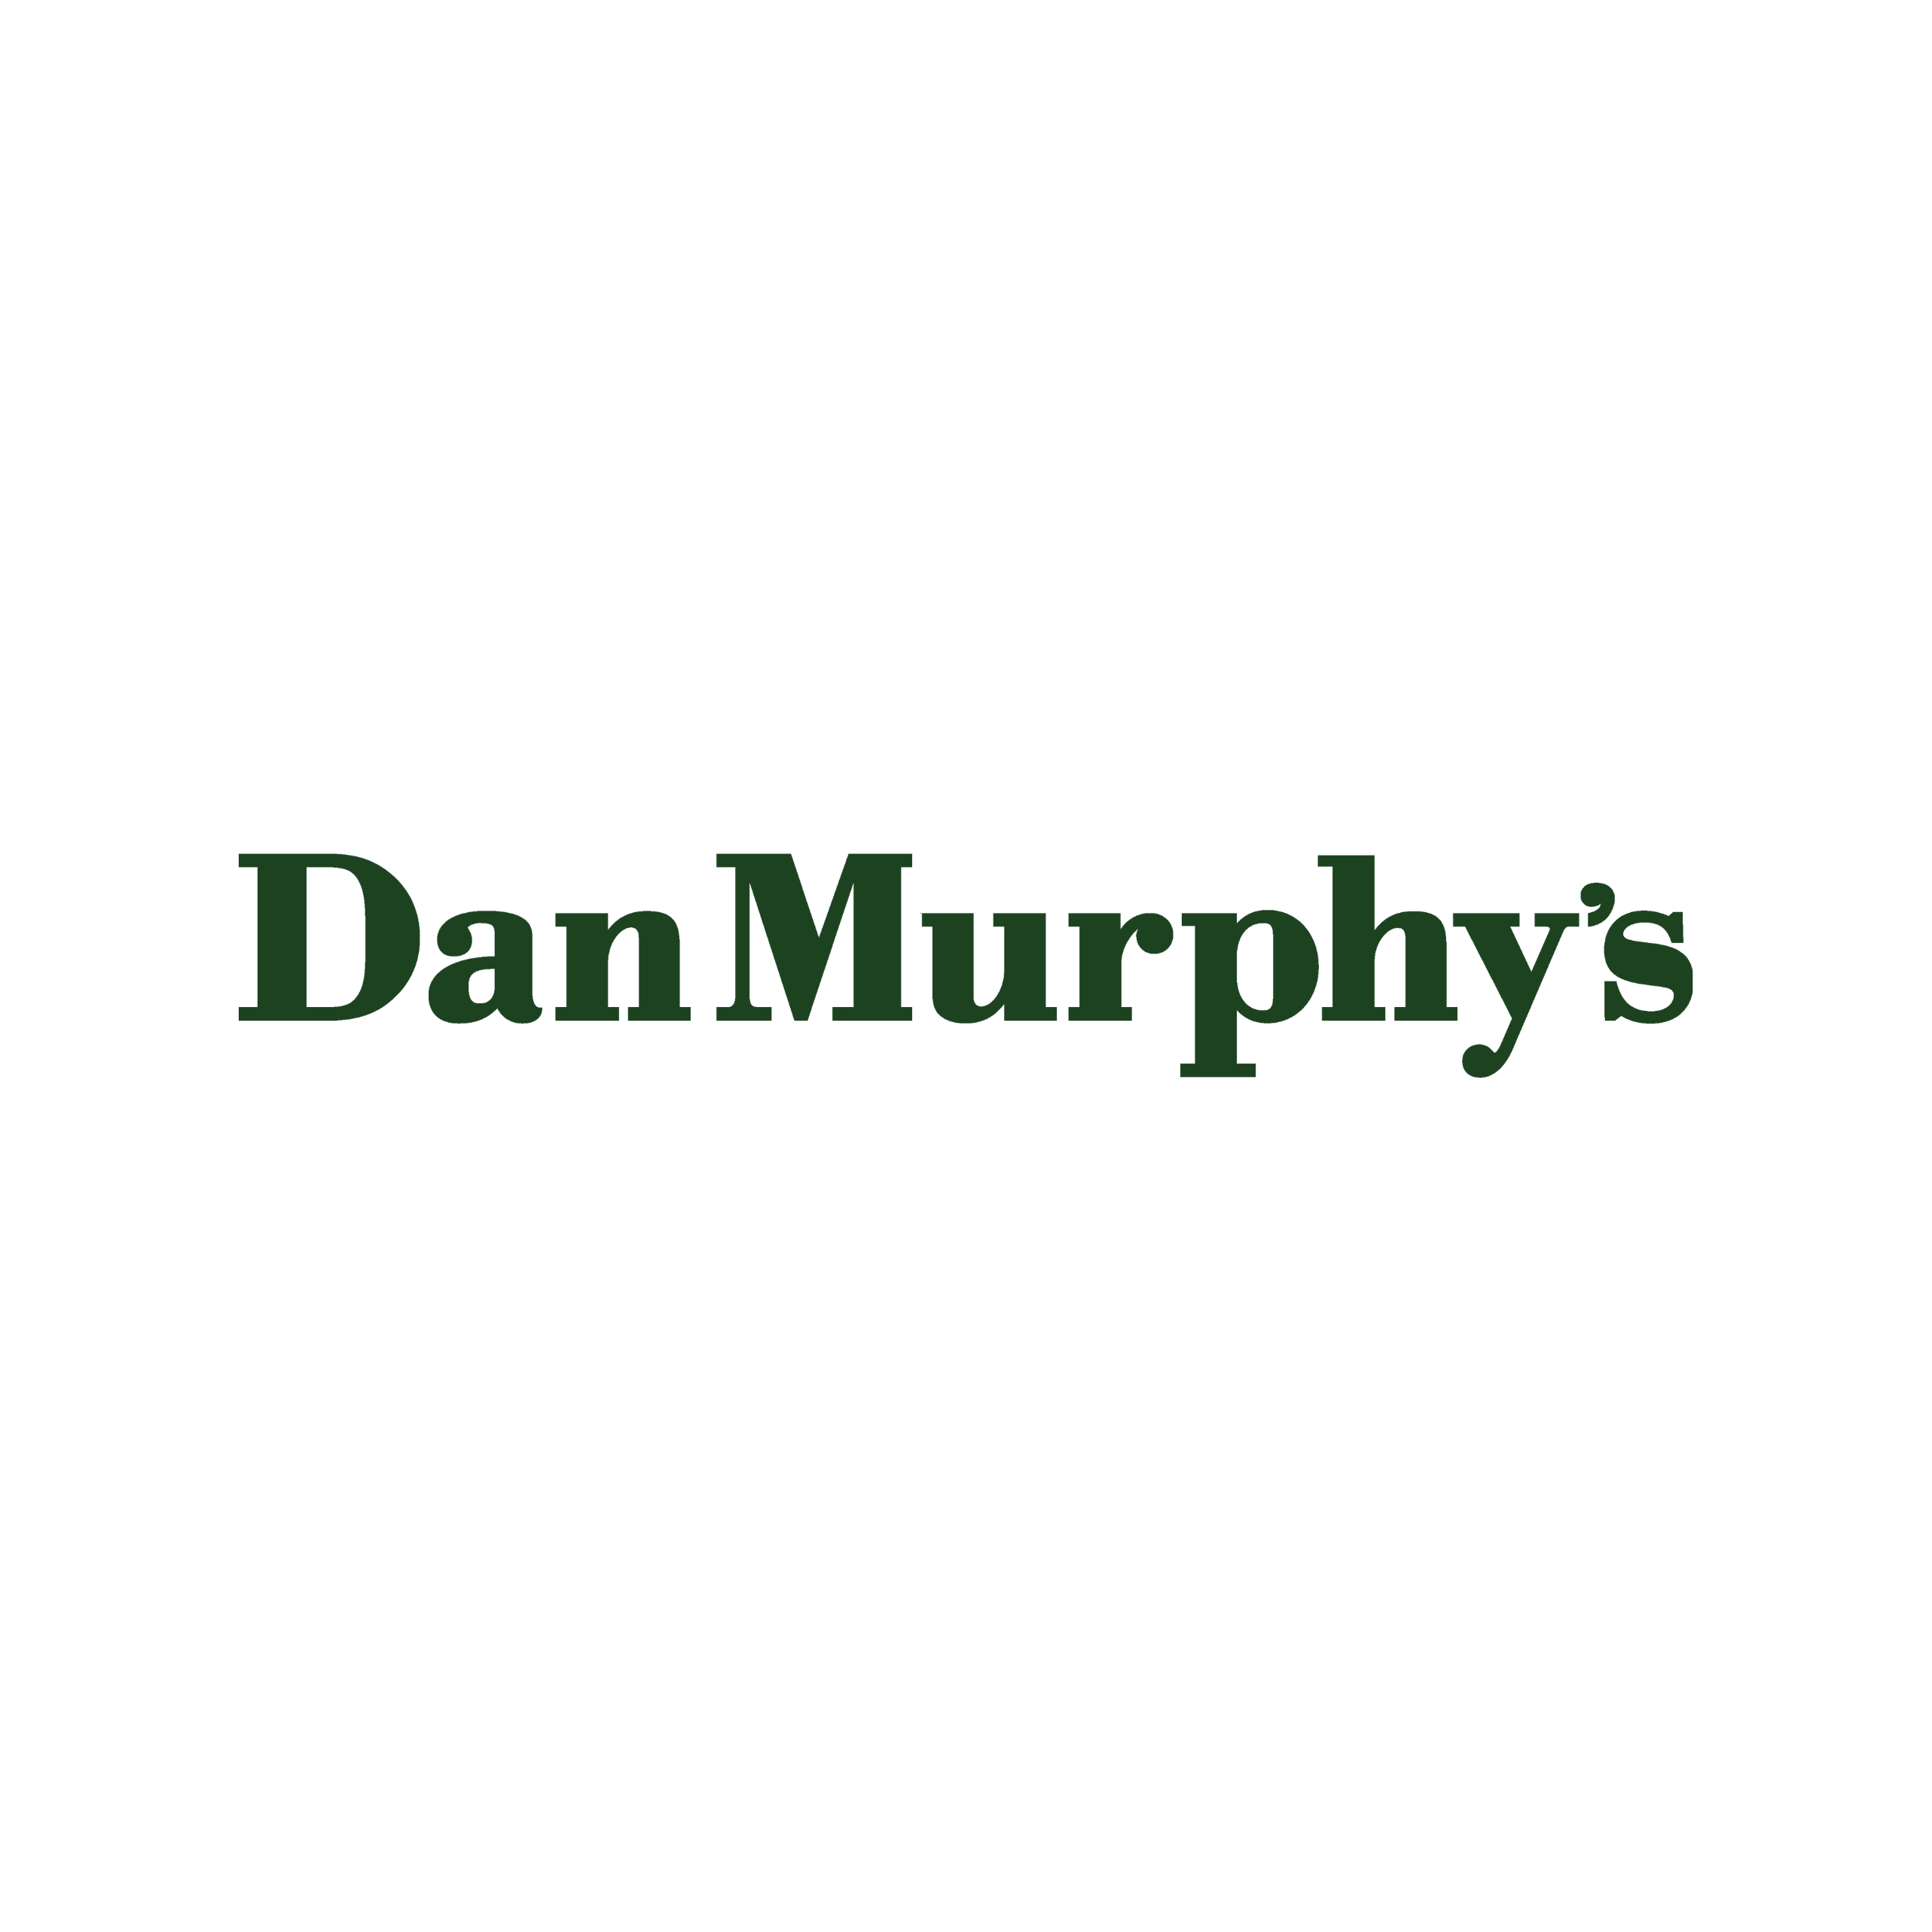 Dan Murphy’s